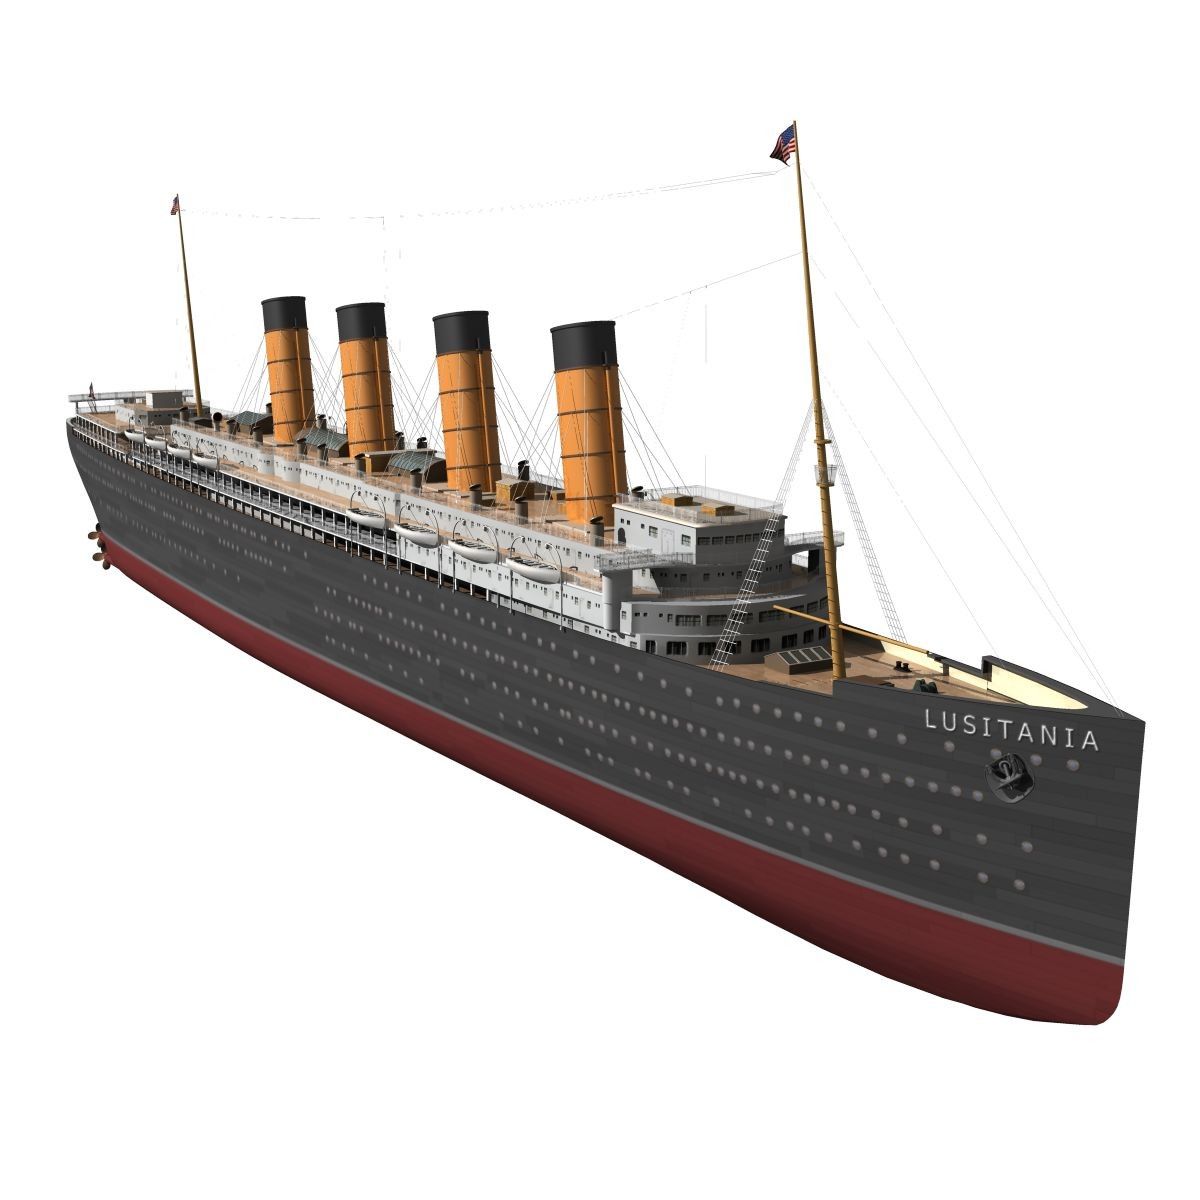 rms lusitania 3D max. Lusitania, Model ships, Rms